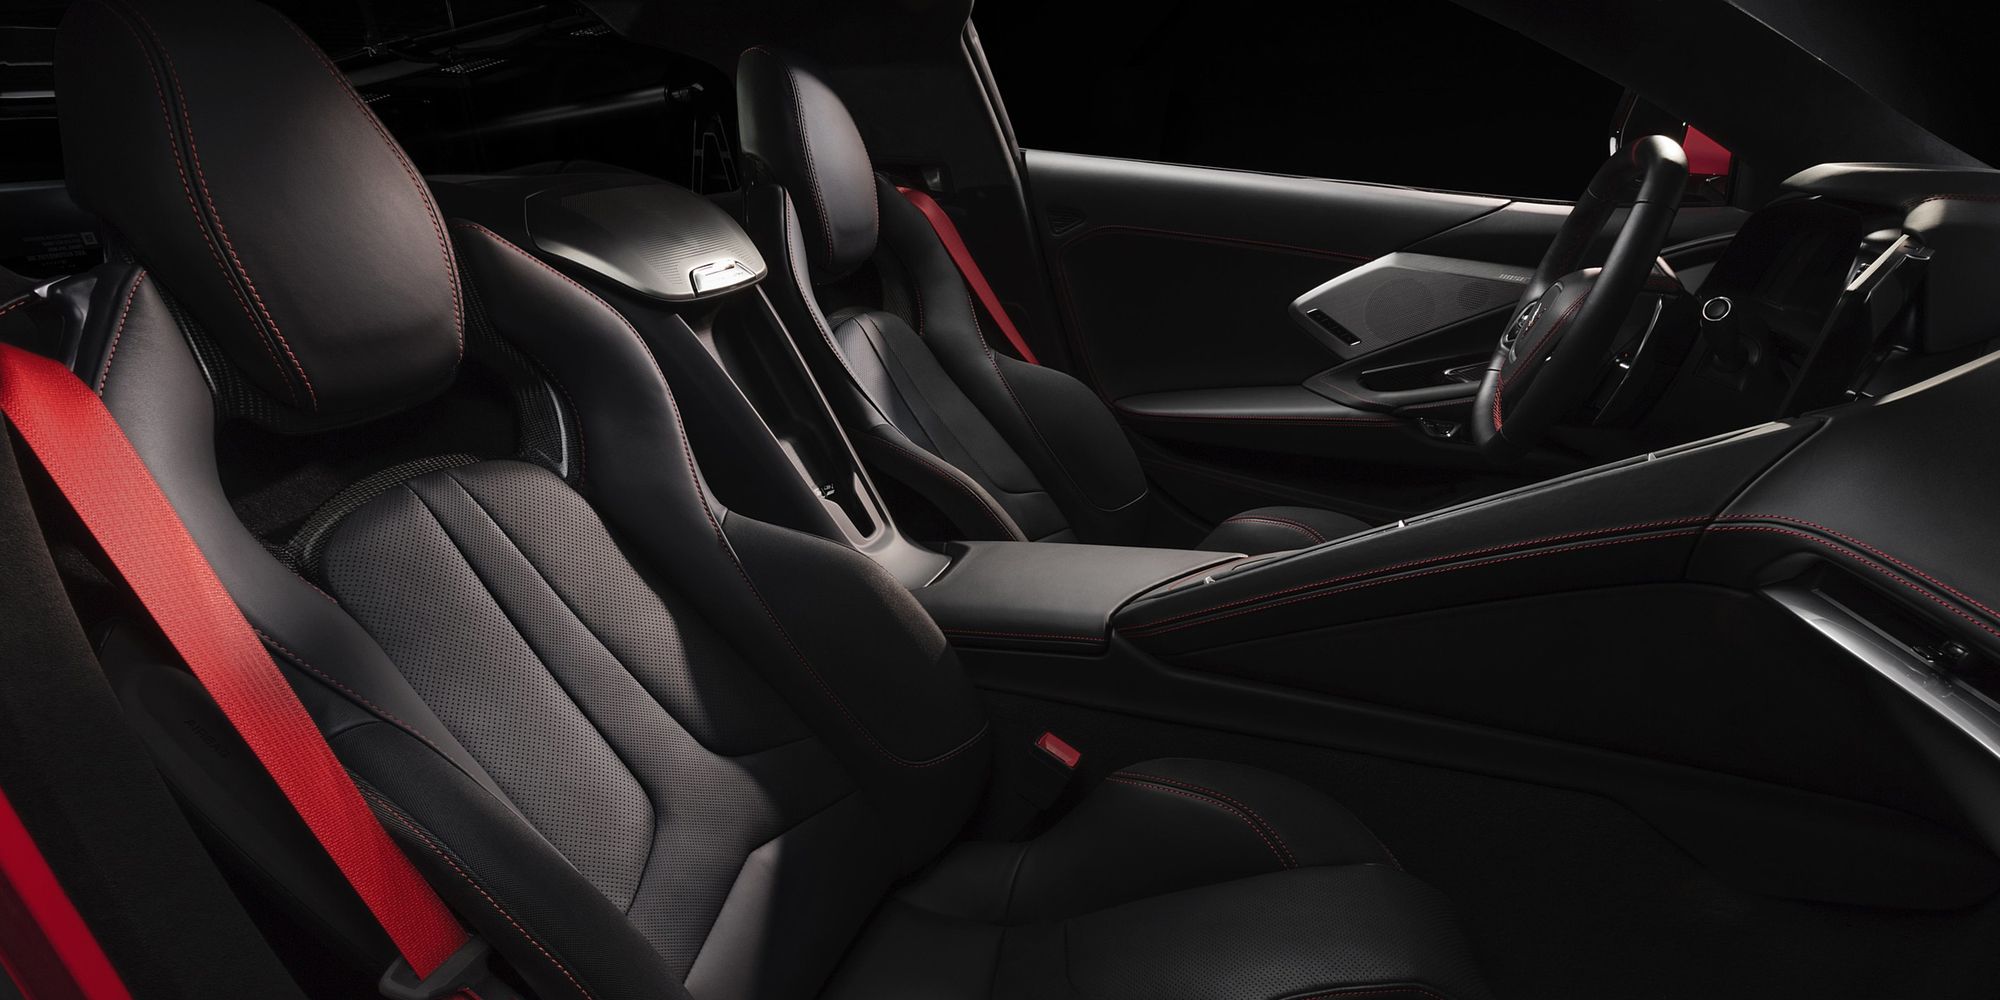 The seats in the Corvette Stingray